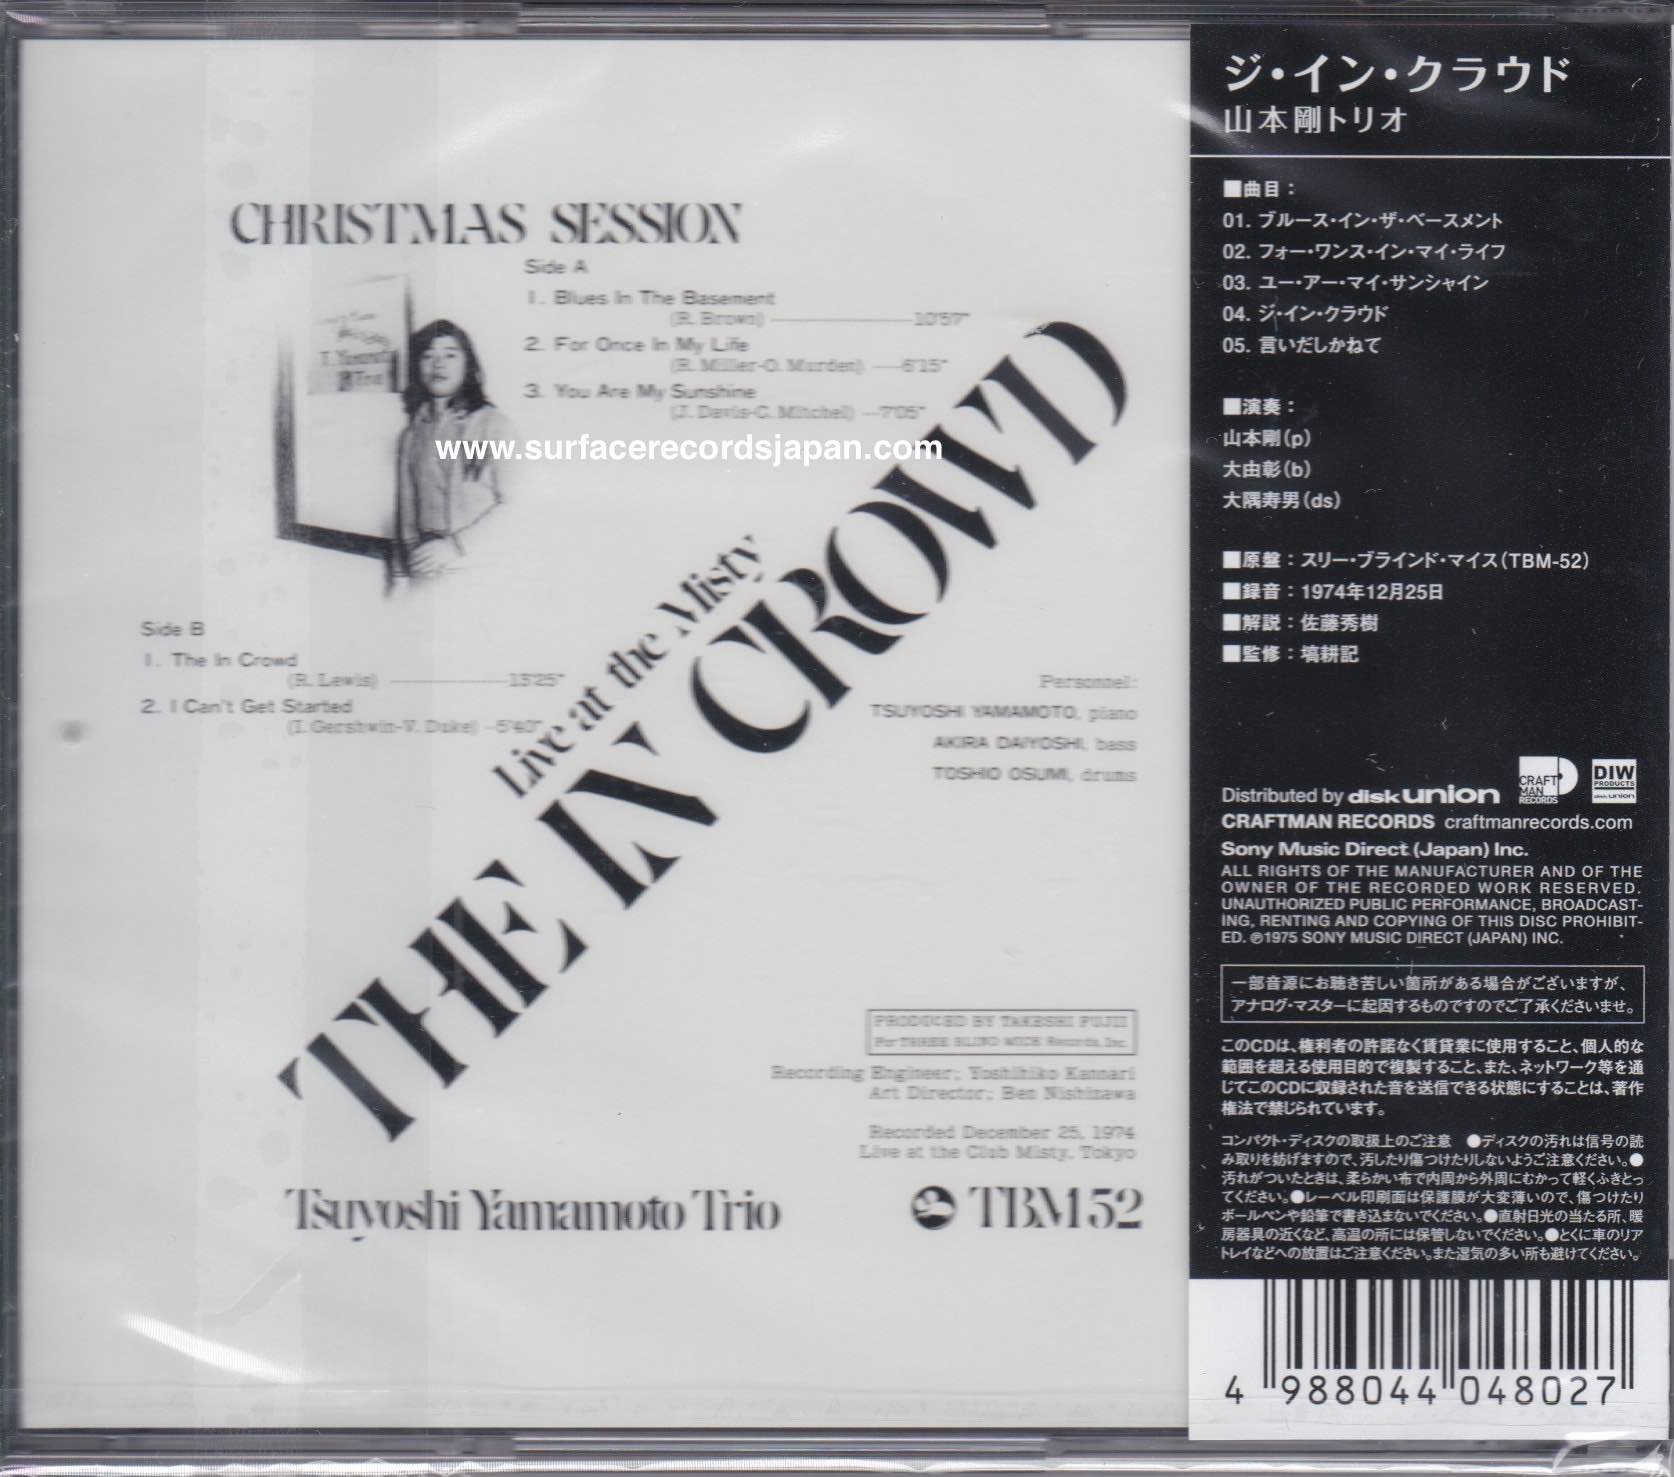 Tsuyoshi Yamamoto Trio ‎– The In Crowd